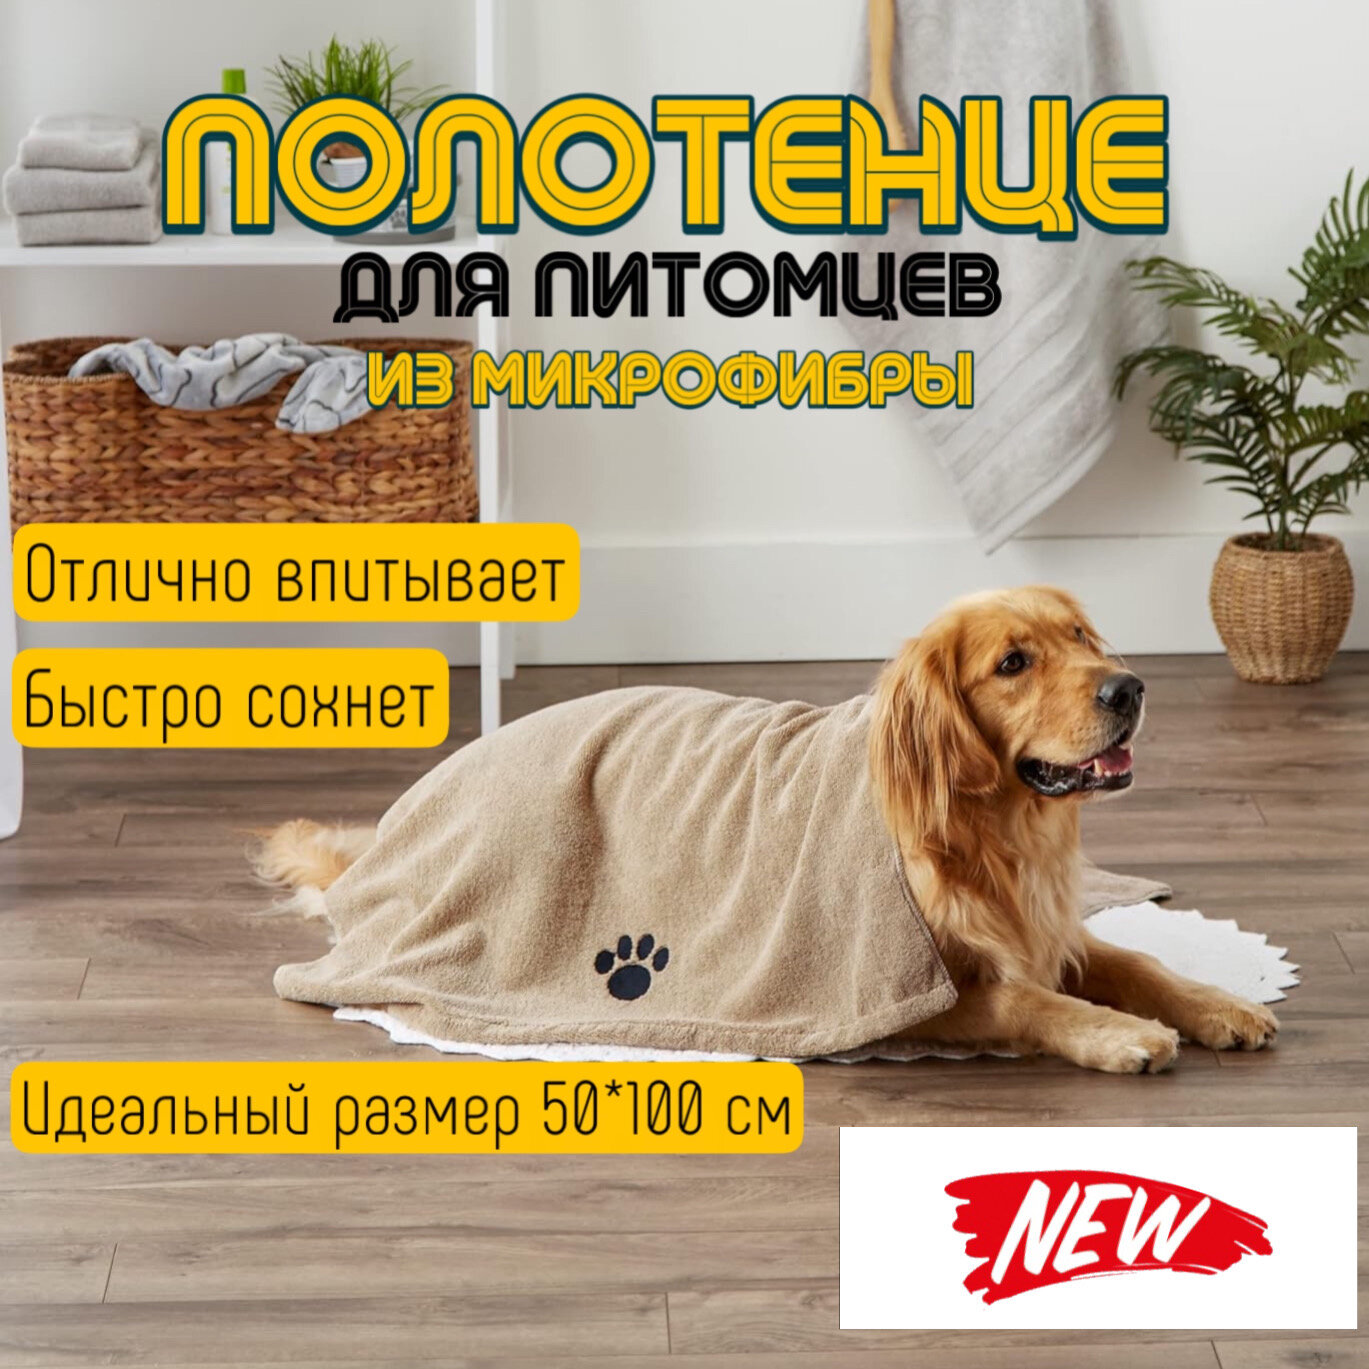 Мохнатик, полотенце для собак и кошек из микрофибры, размер 50*100 см, бежевое